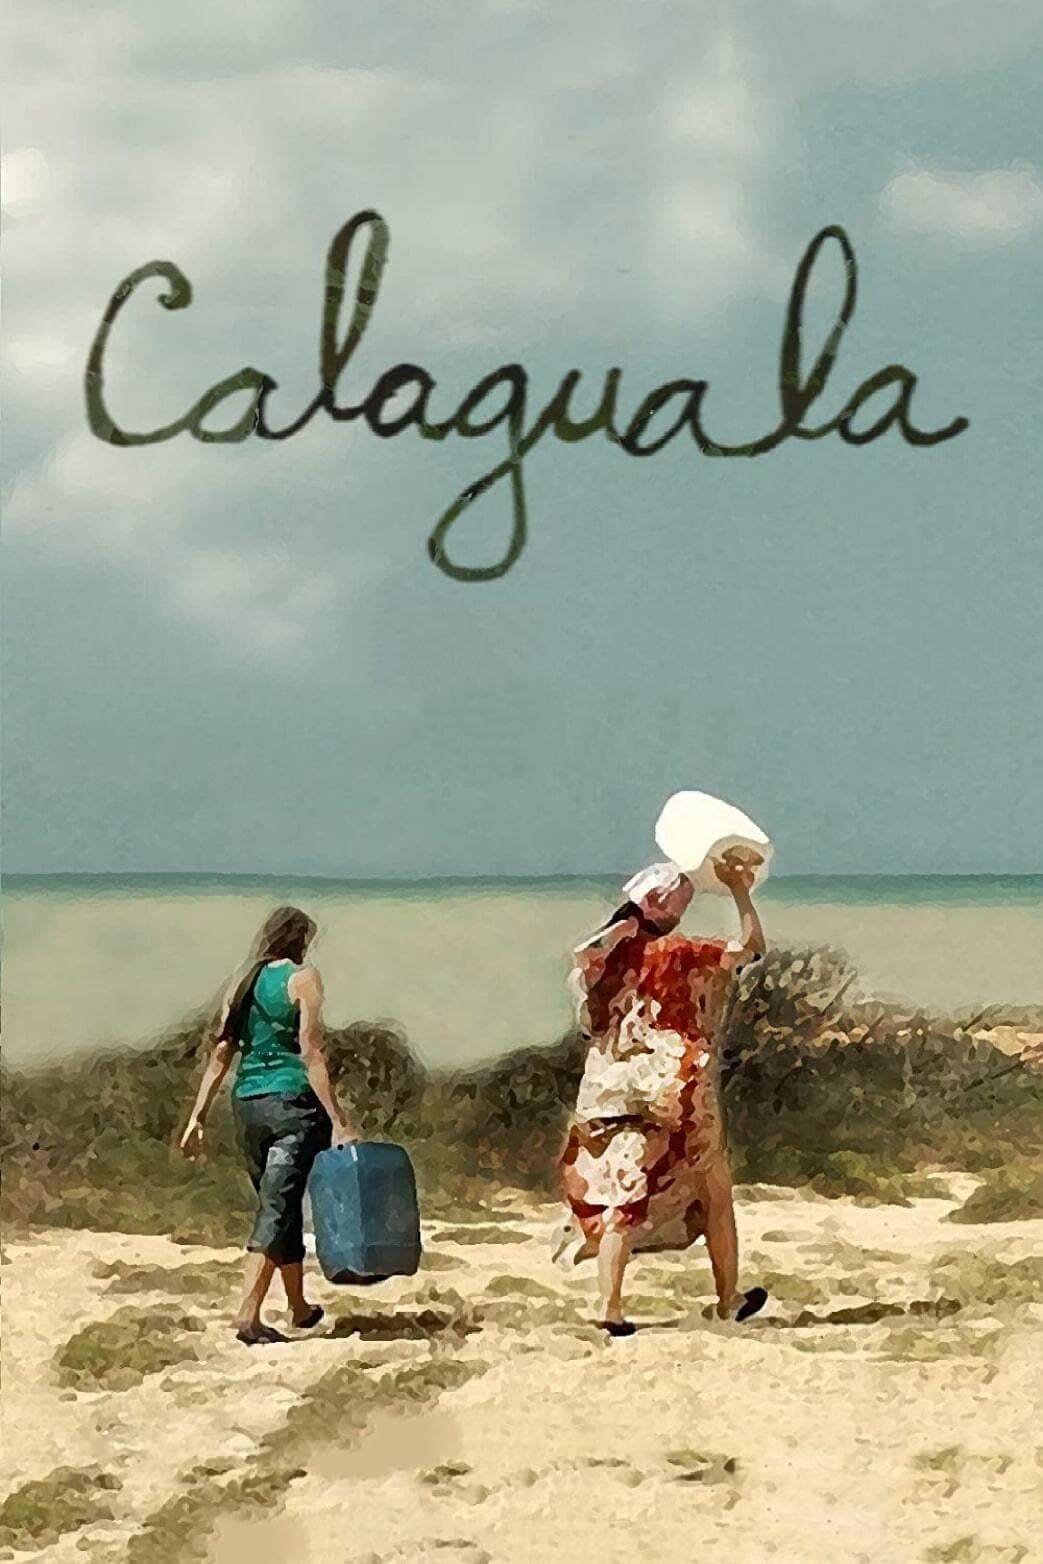 Calaguala